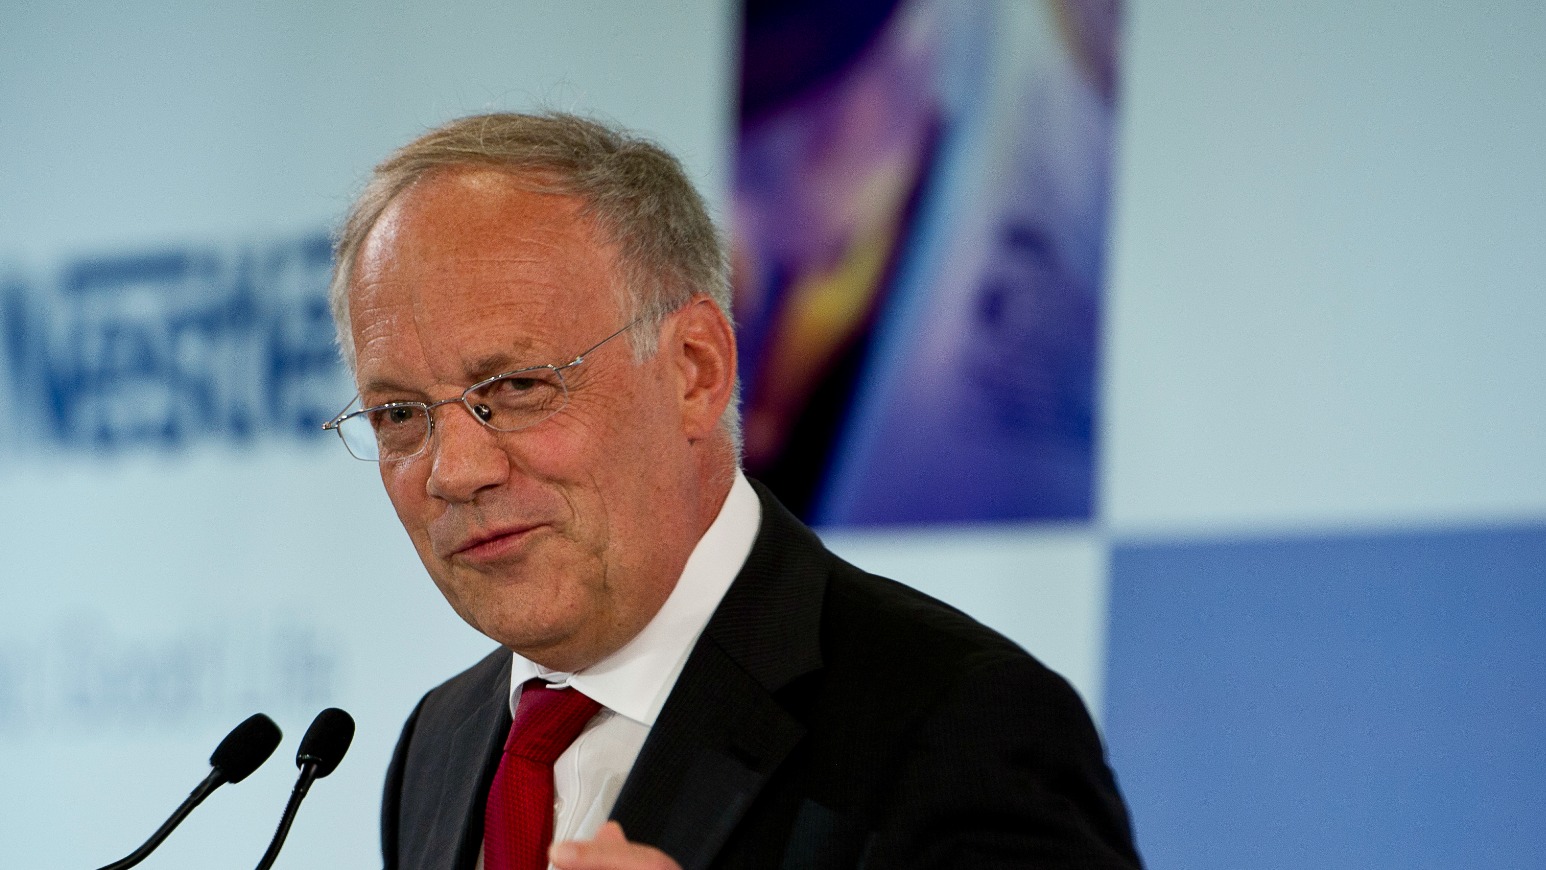 Le président de la Confédération Johann Schneider-Ammann (Photo:Nestlé/Flickr/CC BY-NC-ND 2.0)